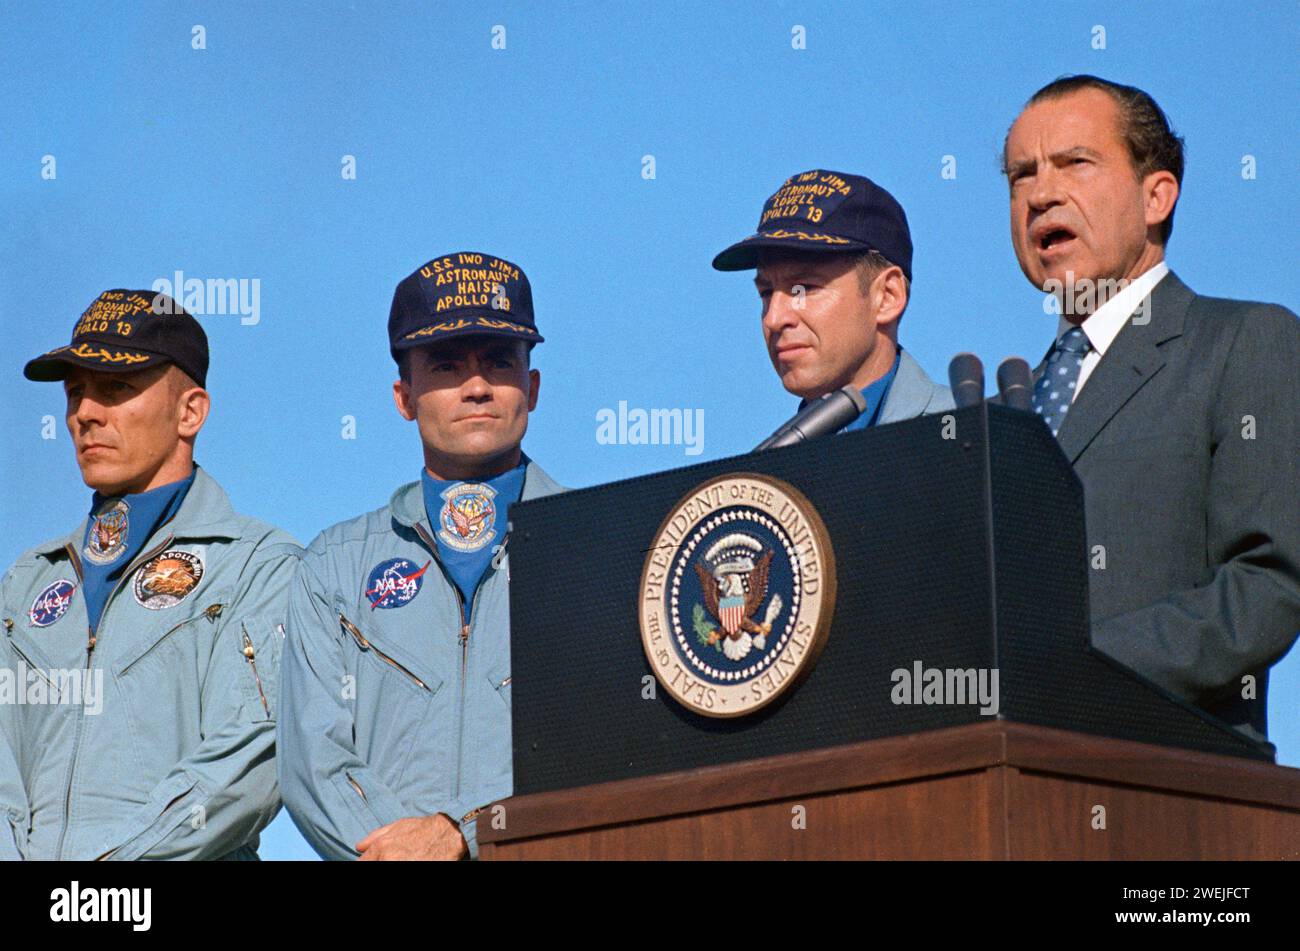 Le président américain Richard M. Nixon et les astronautes (de gauche à droite) John L. Swigert Jr., pilote du module de commande ; Fred W. Haise Jr., pilote du module lunaire; James A. Lovell Jr., commandant d'Apollo 13, lors d'une cérémonie spéciale pour remettre à l'équipage d'Apollo 13 la Médaille présidentielle de la liberté, la plus haute distinction civile du pays, Hickam Air Force base, Hawaii, USA, NASA, avril 18, 1970 Banque D'Images